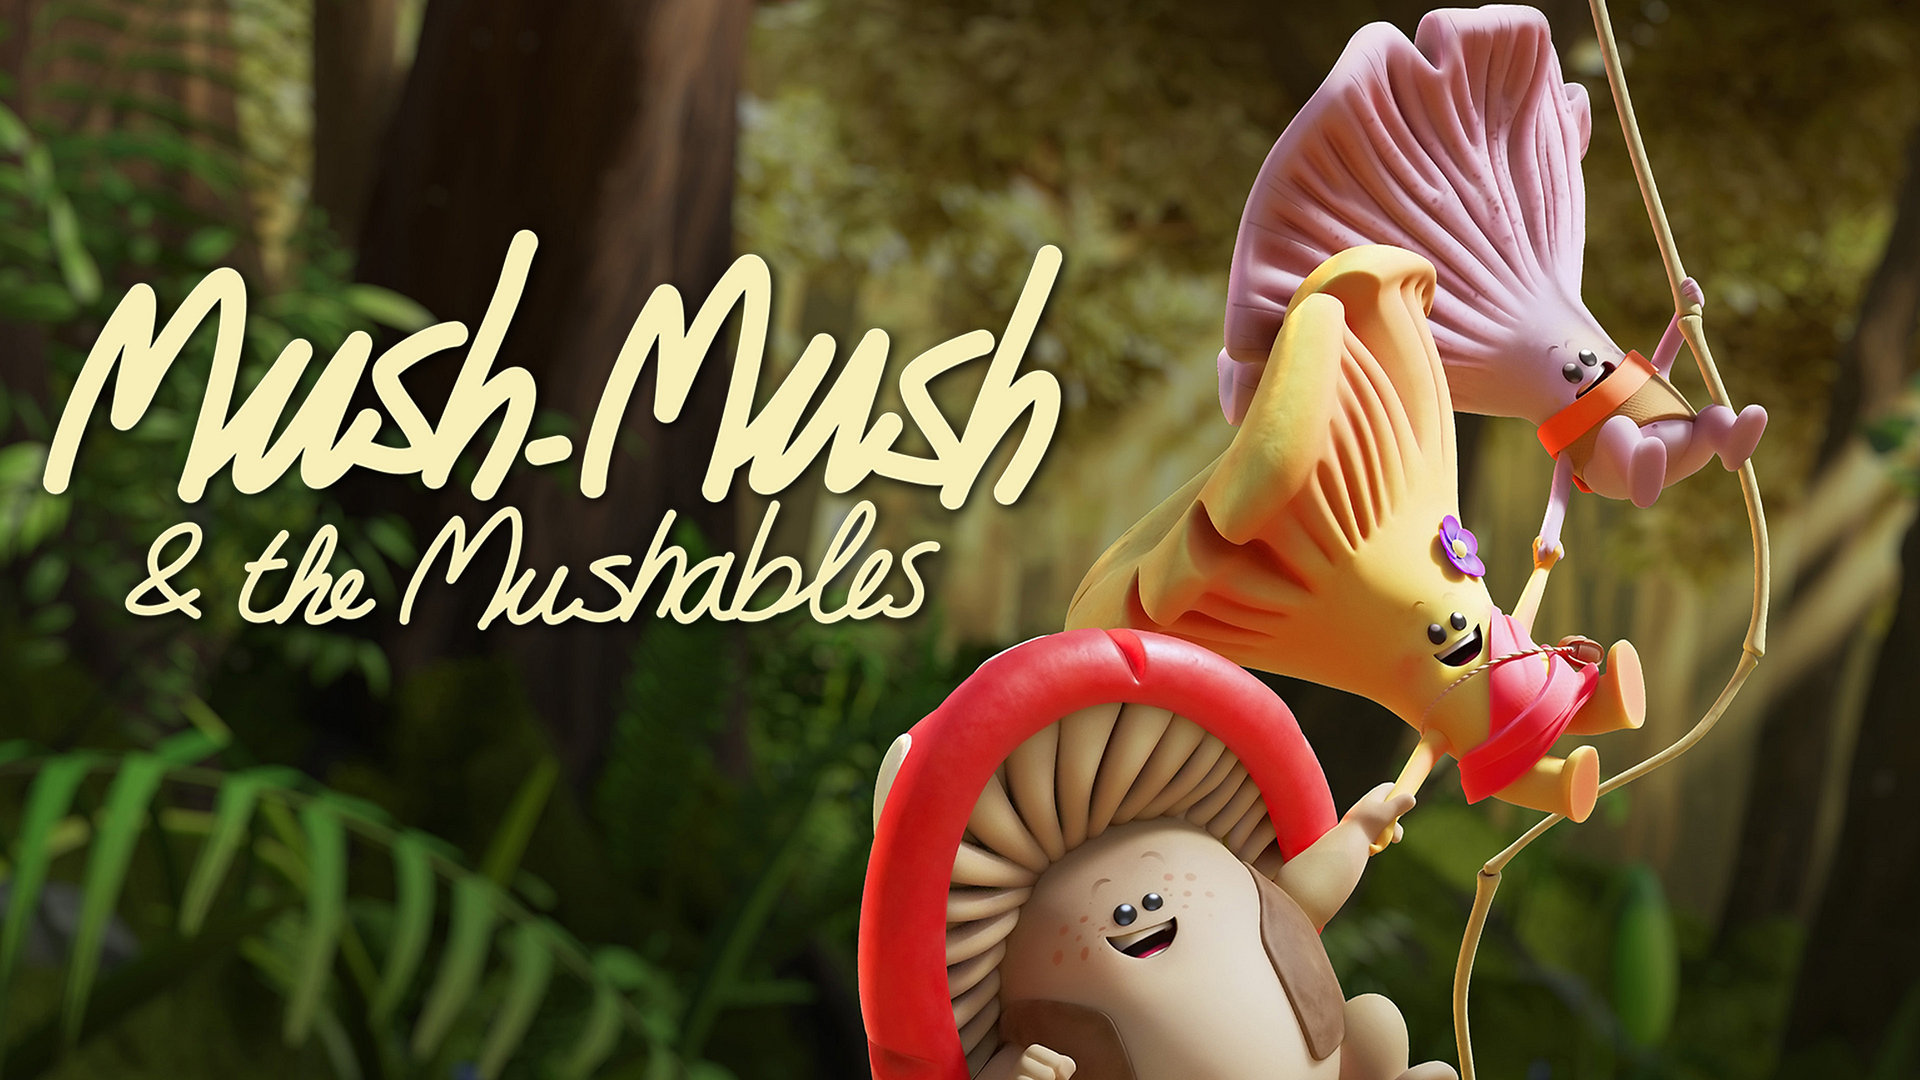 Mush-Mush og Musherne